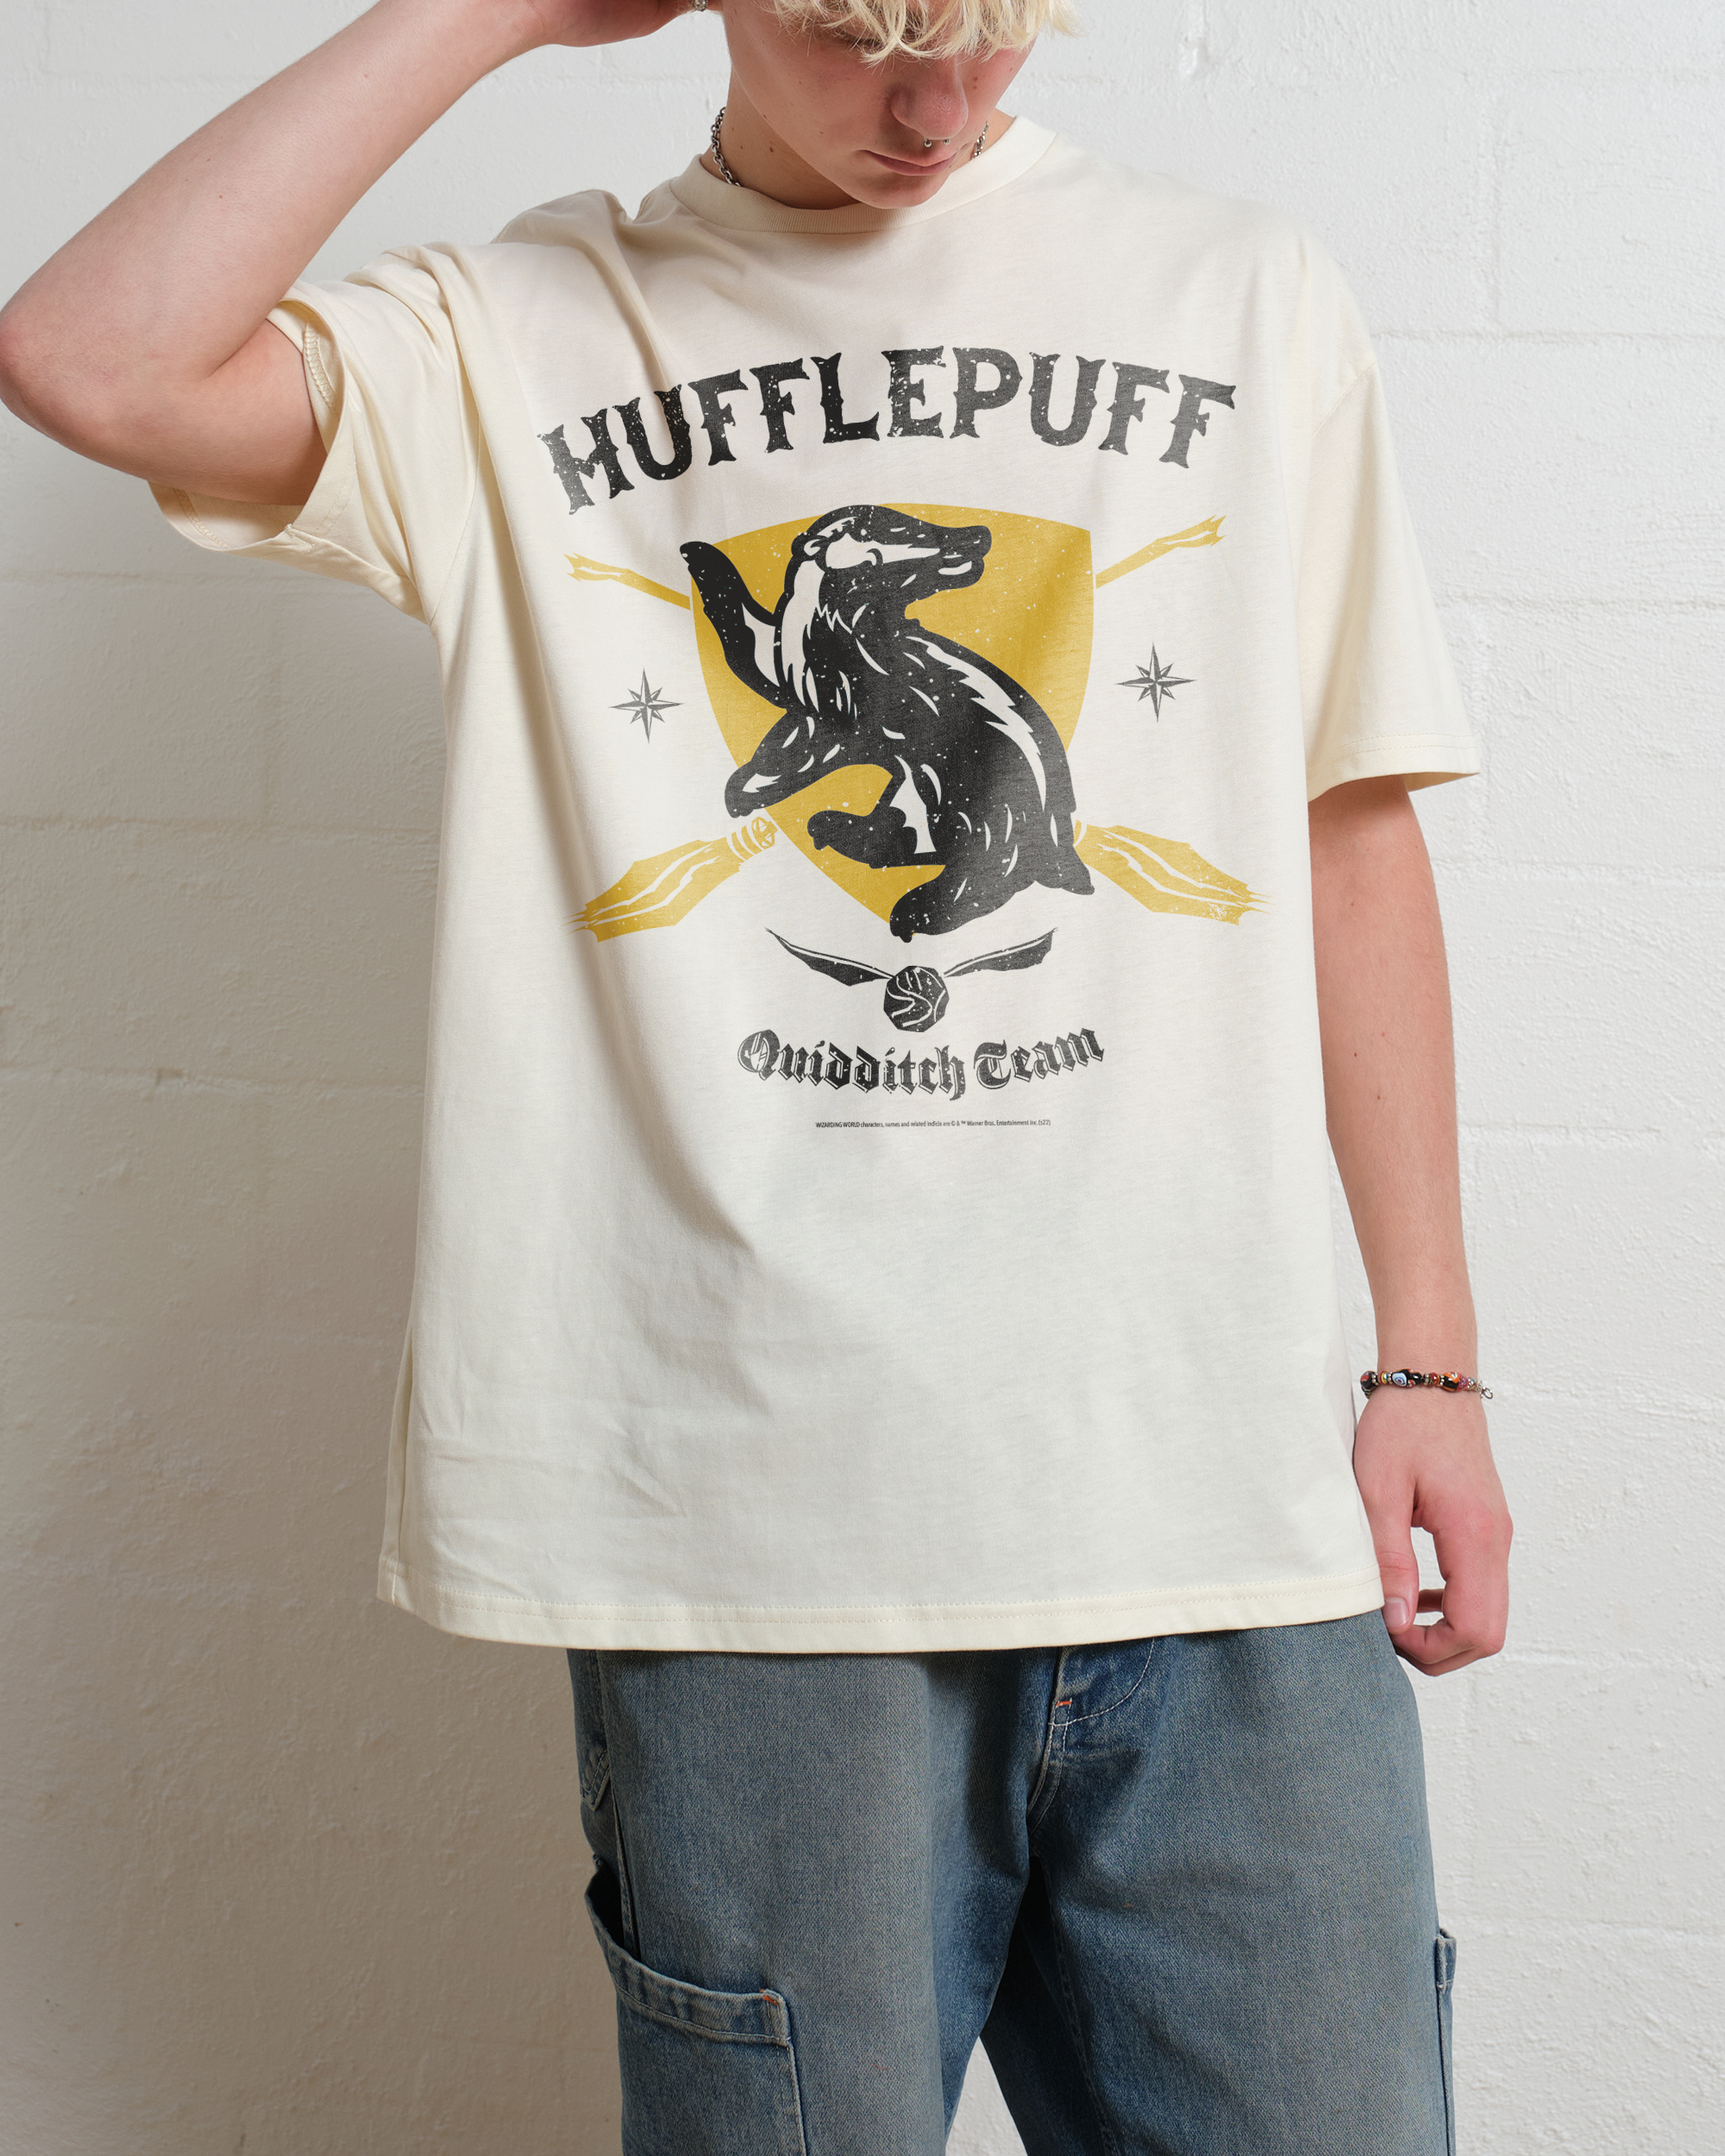 Hufflepuff Quidditch Team T-Shirt